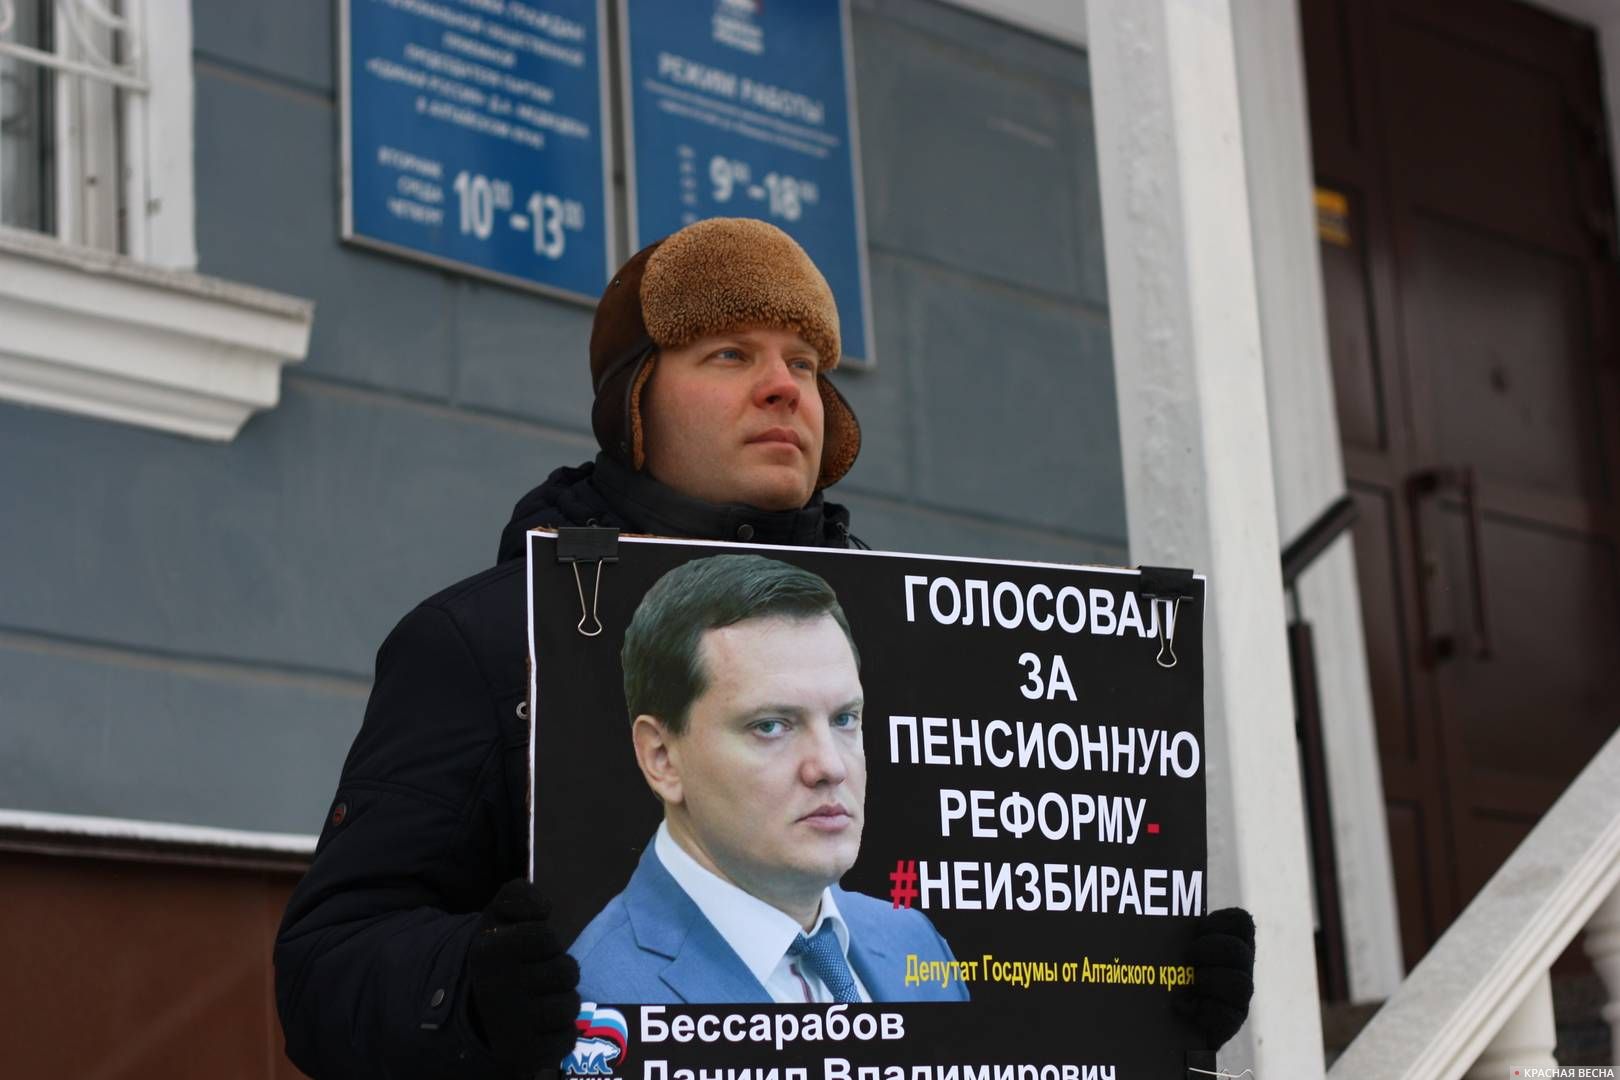 Пикет против пенсионной реформы. Барнаул.